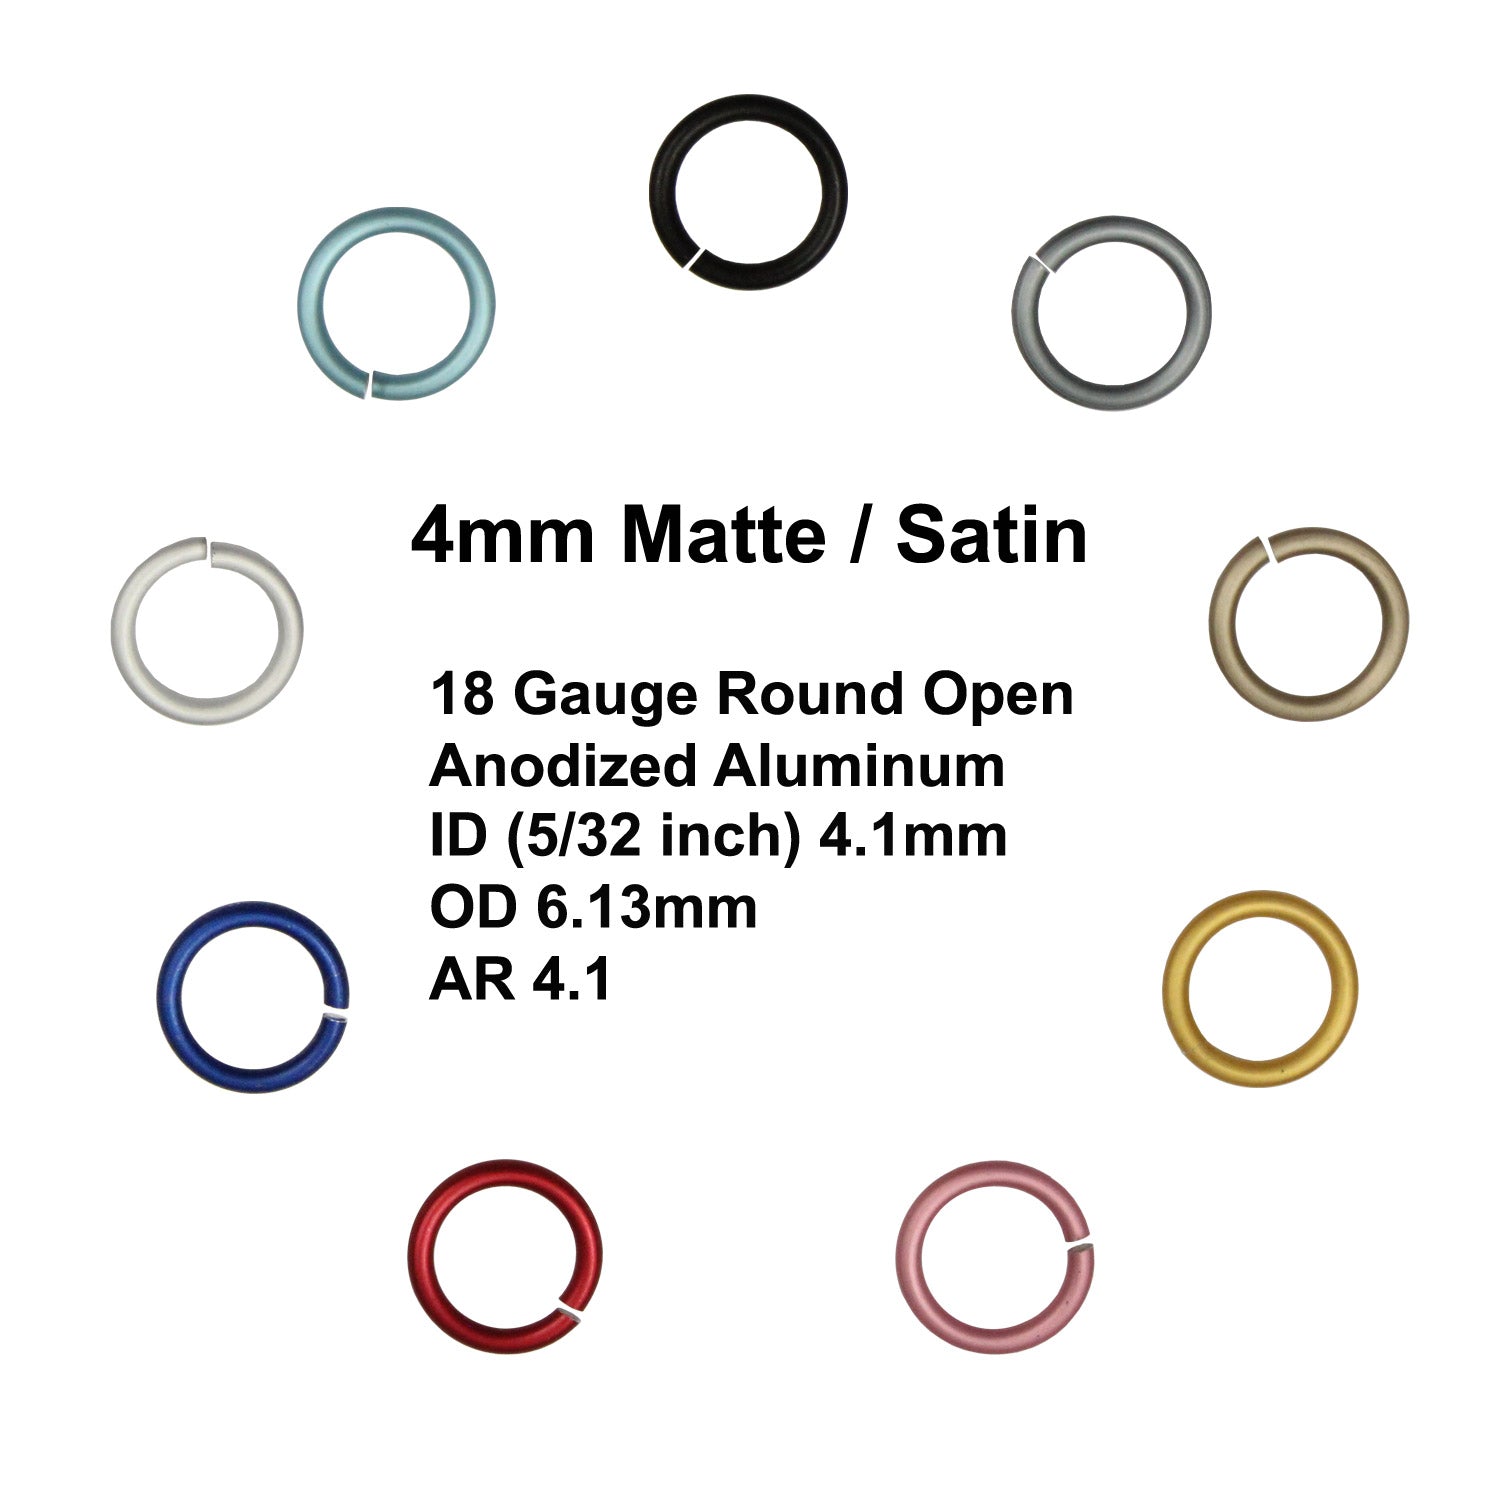 MATTE 4mm - 18 GA Jump Rings